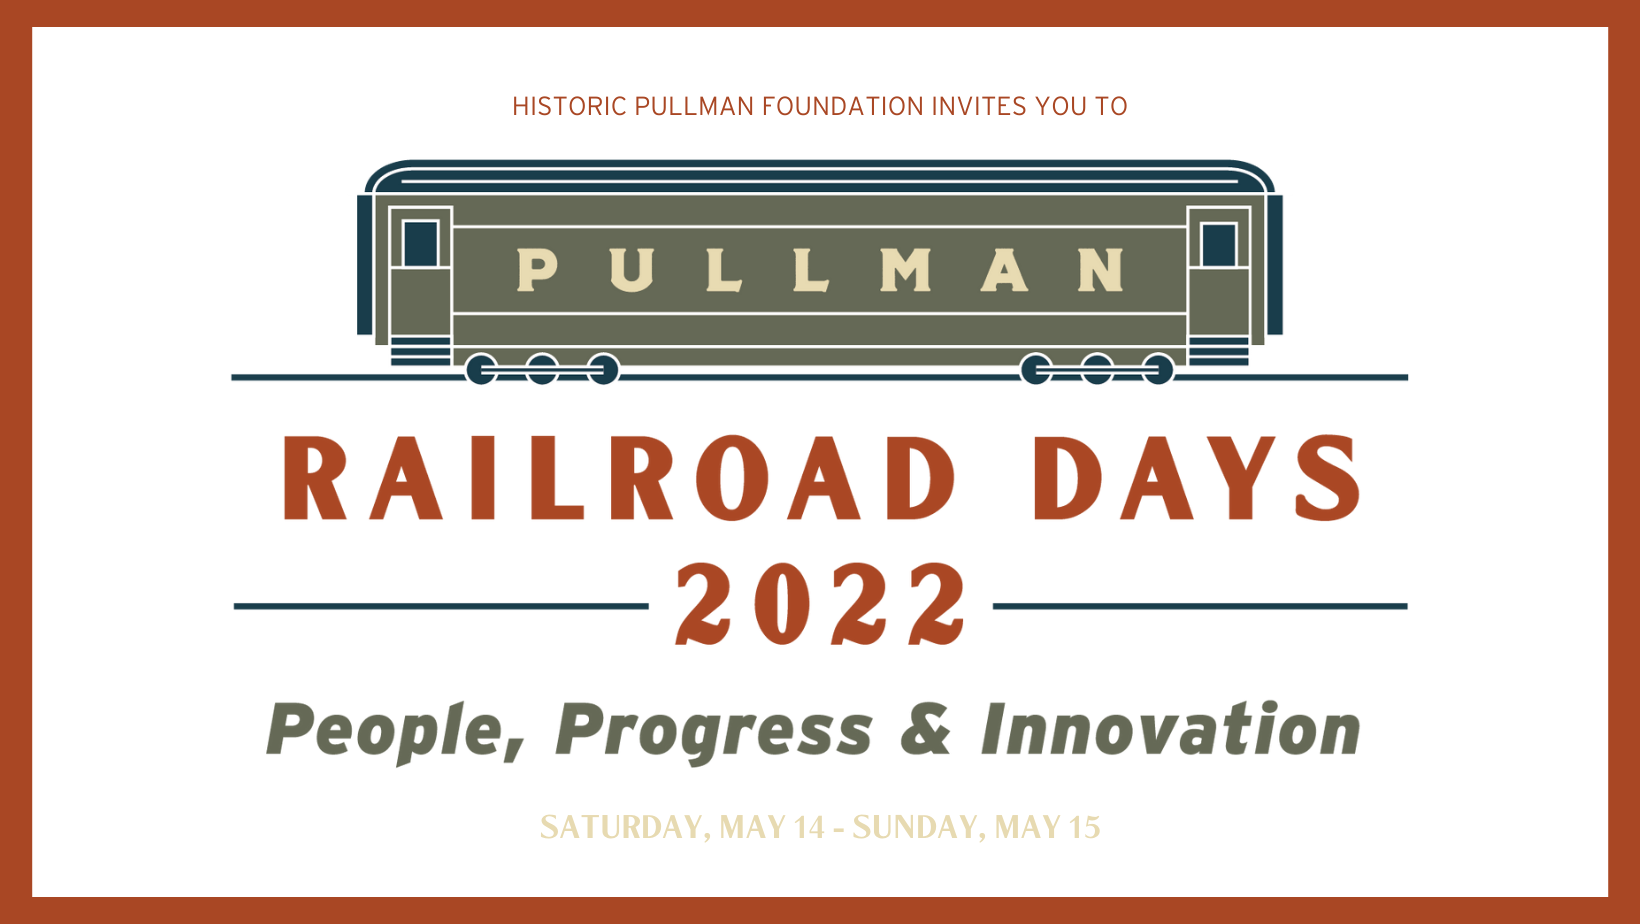 Pullman Railroad Days